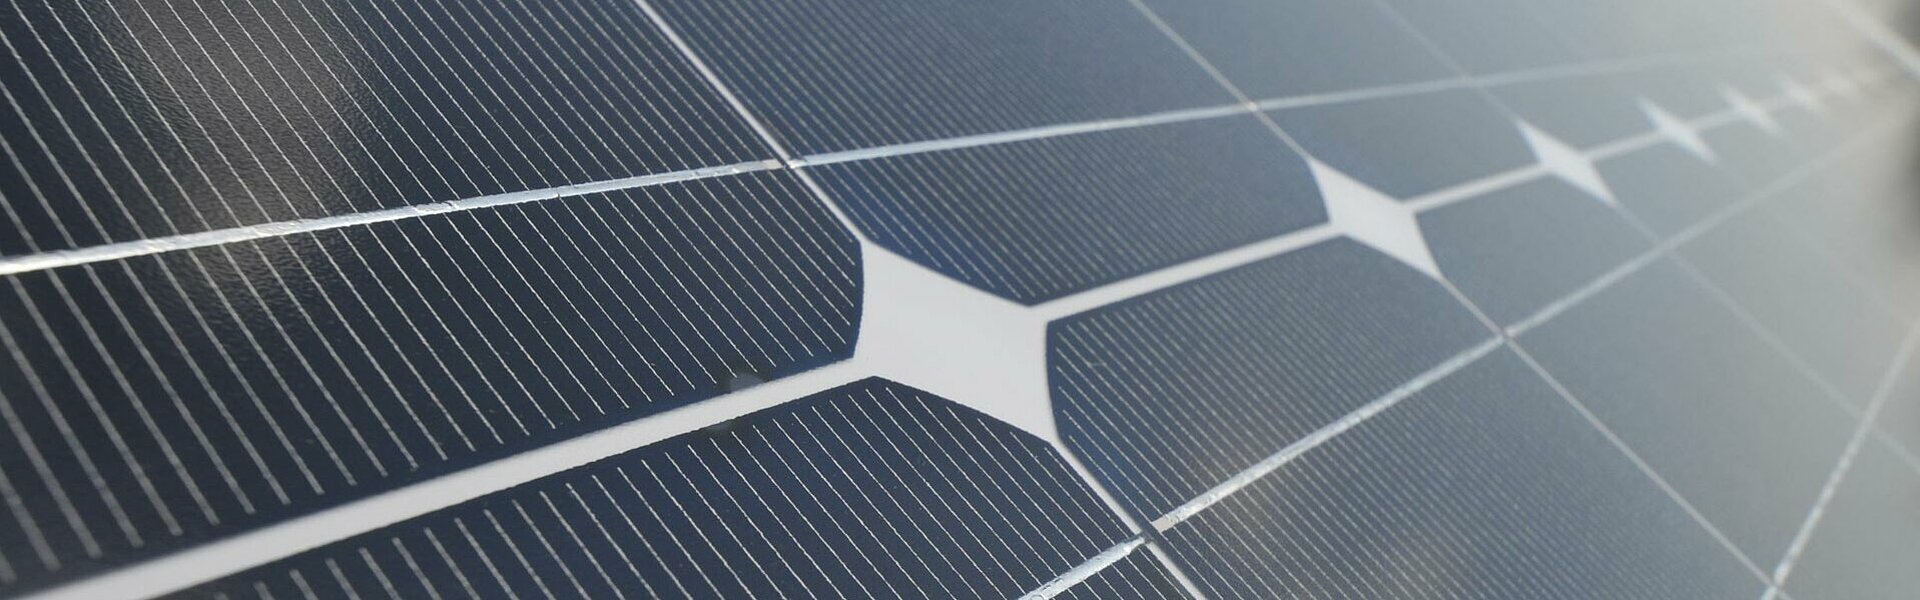 Nahaufnahme eines Photovoltaikmoduls mit erkennbaren Solarzellen